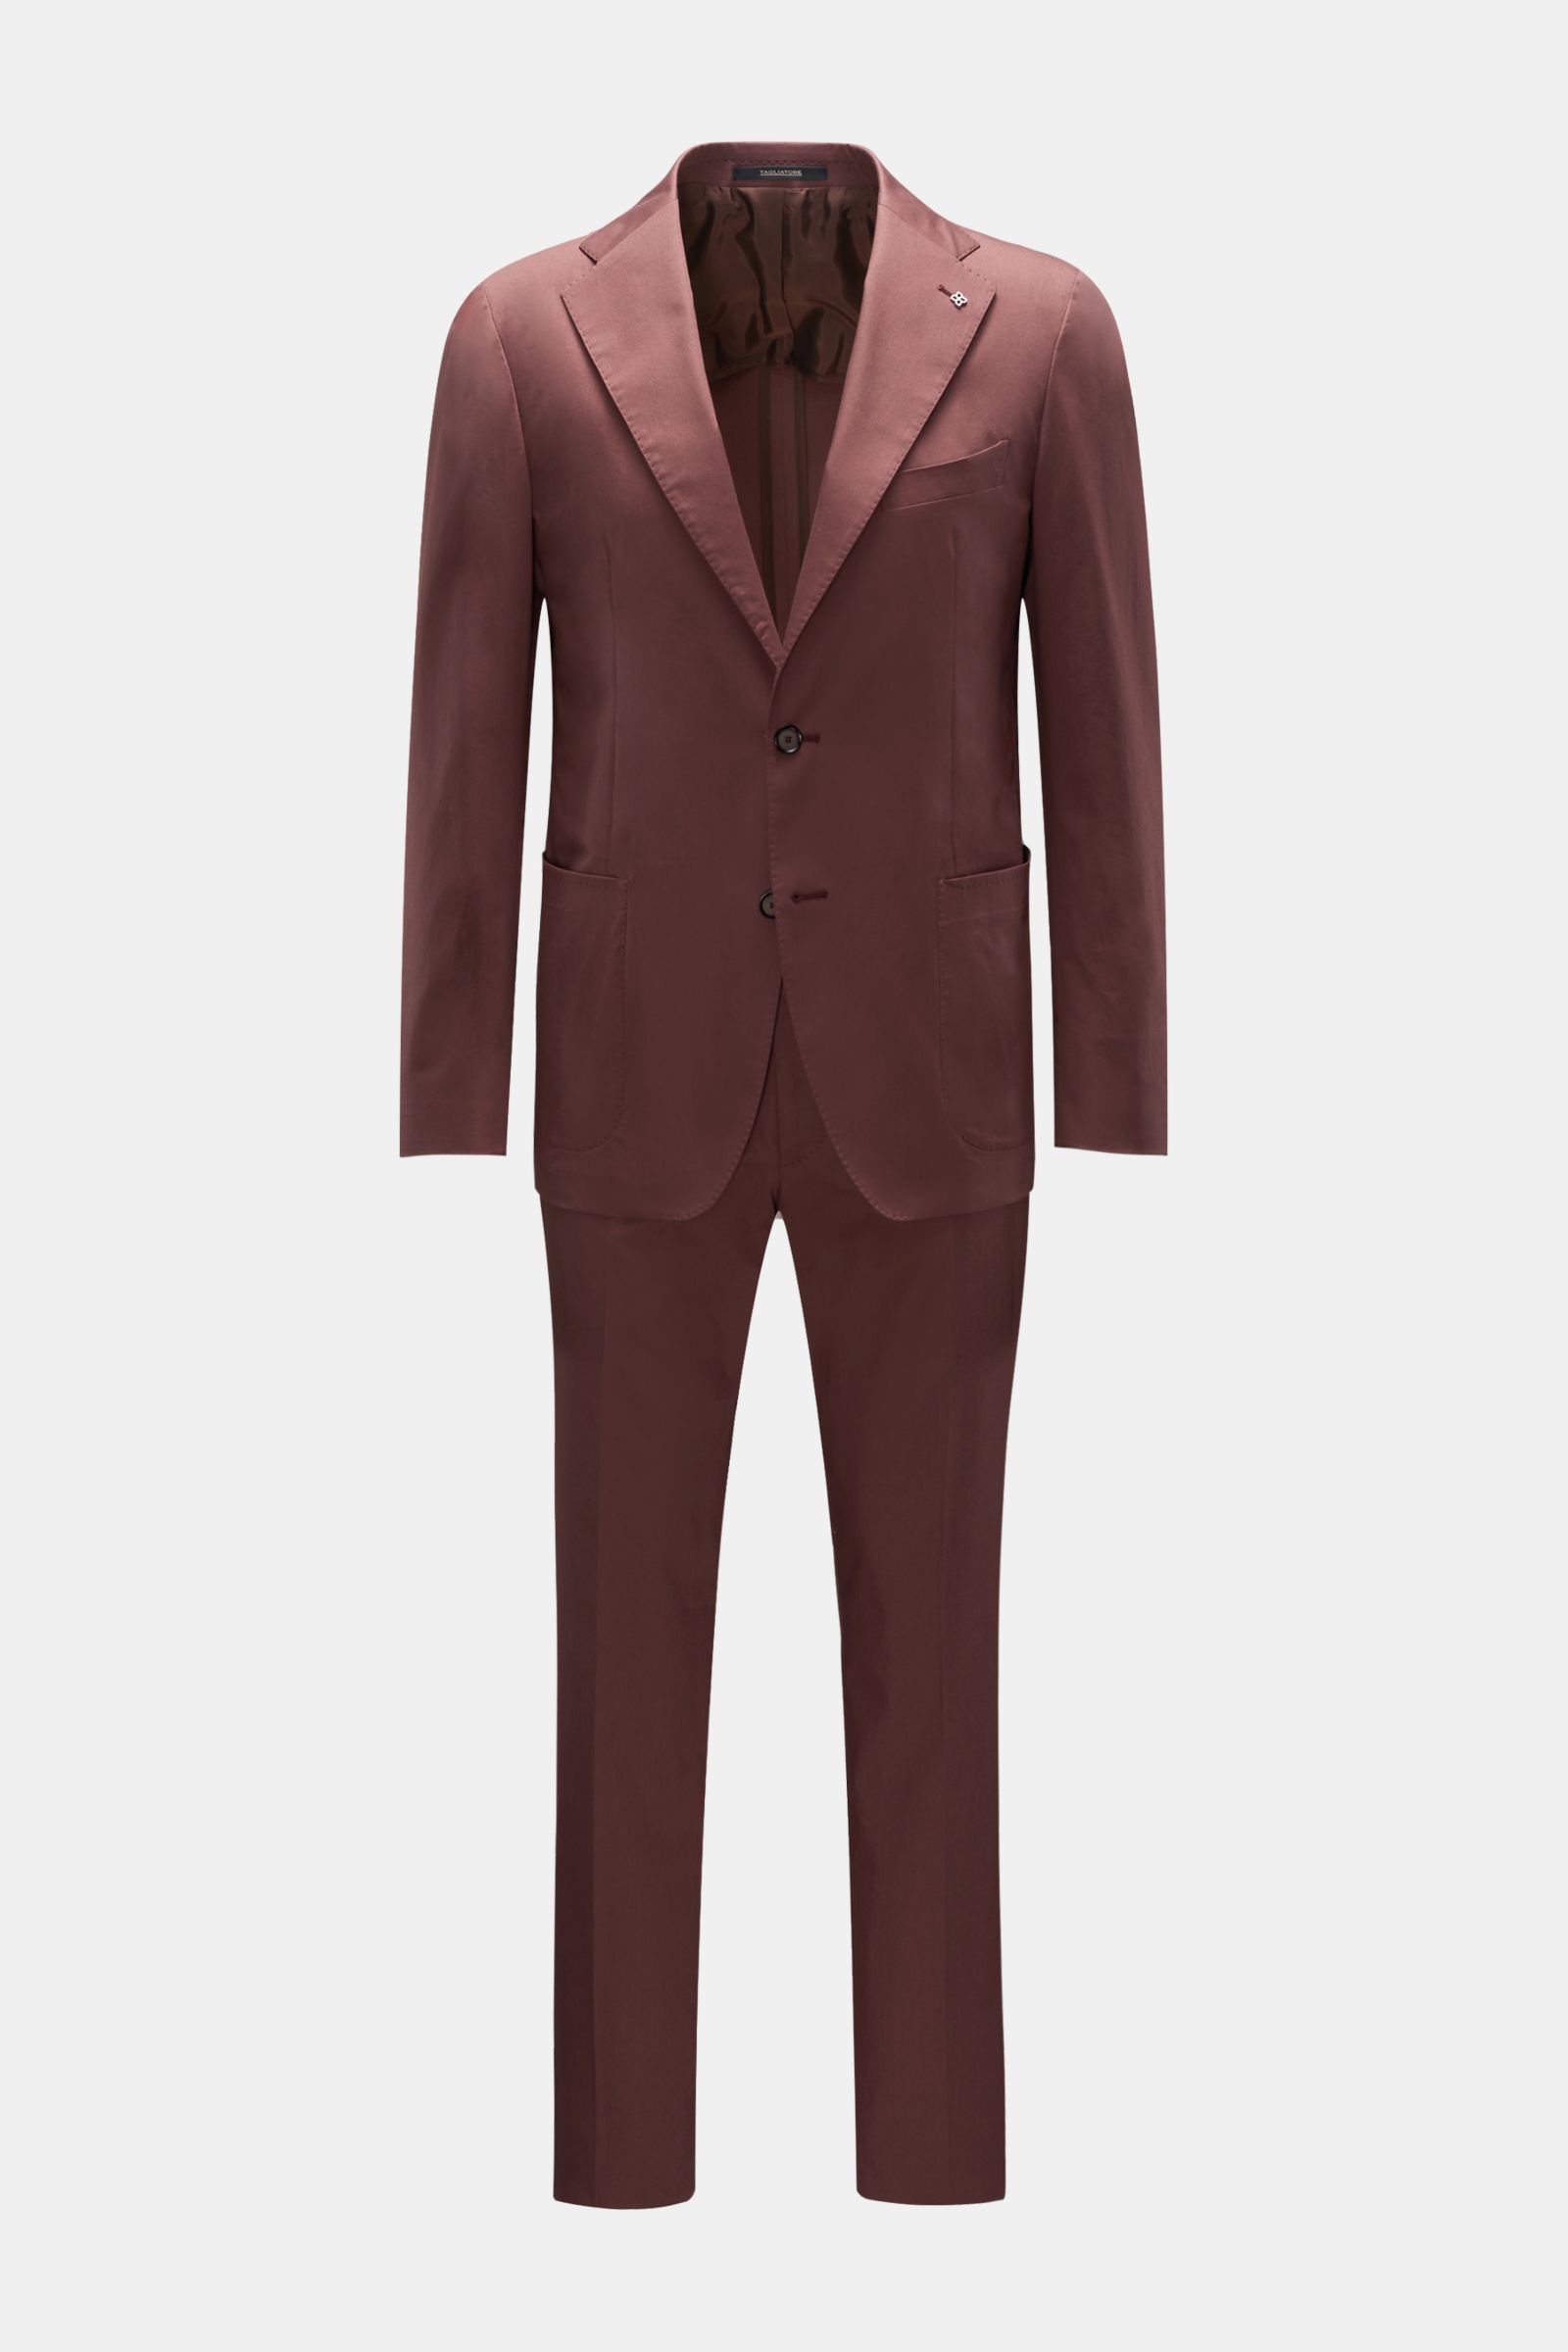 Cotton suit brown